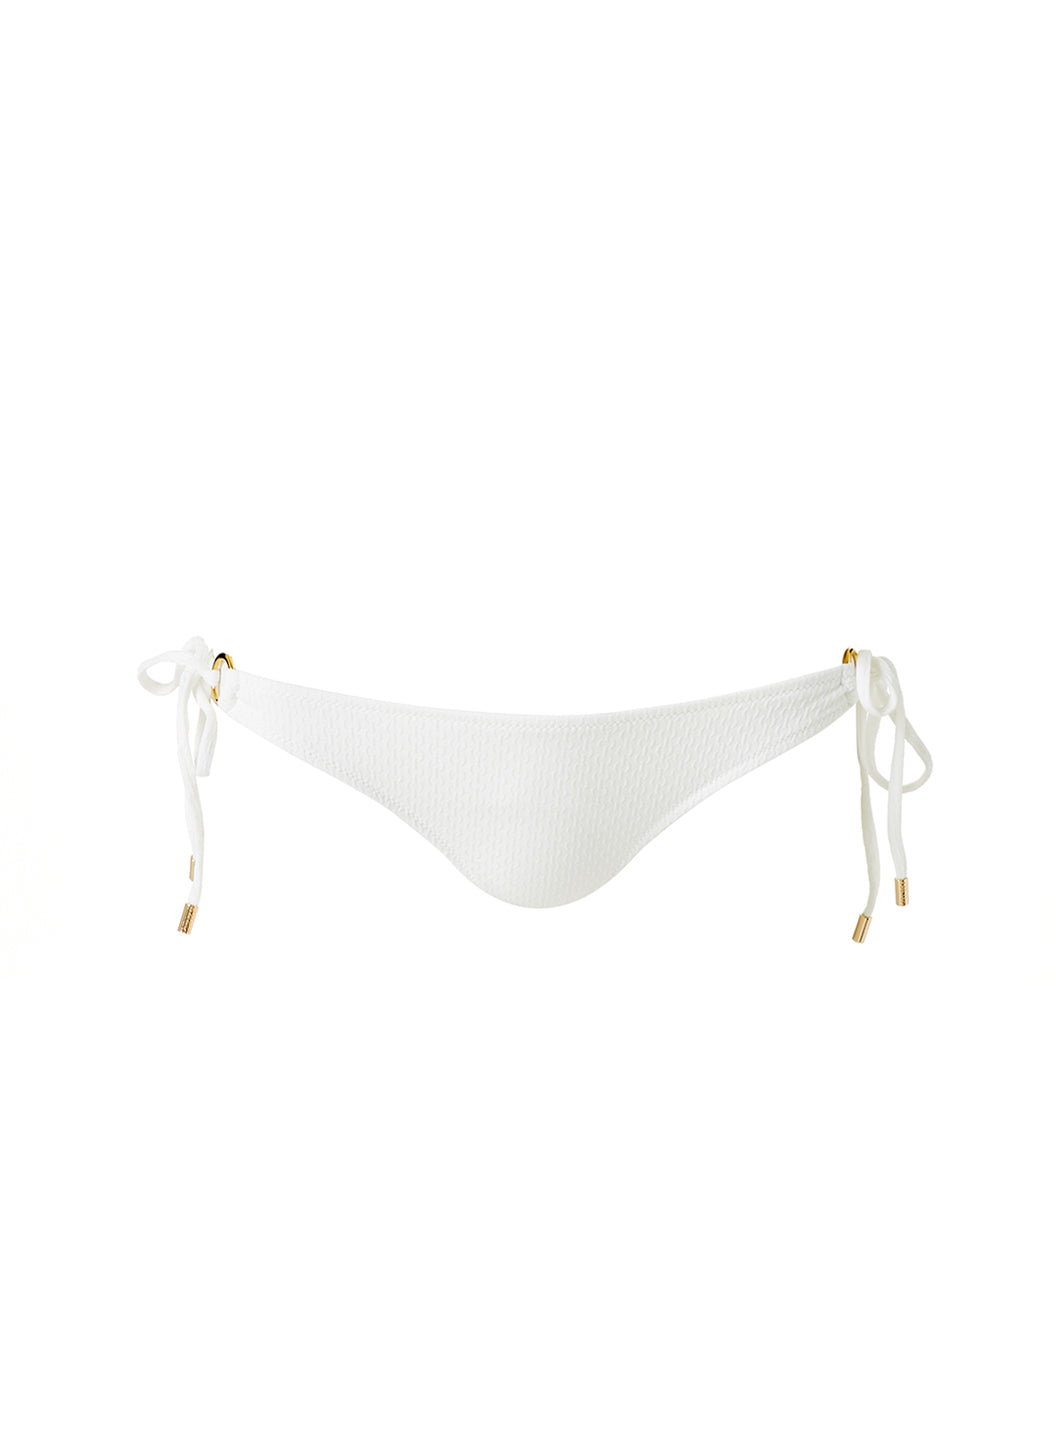 Venice White Textured Bikini Bottom